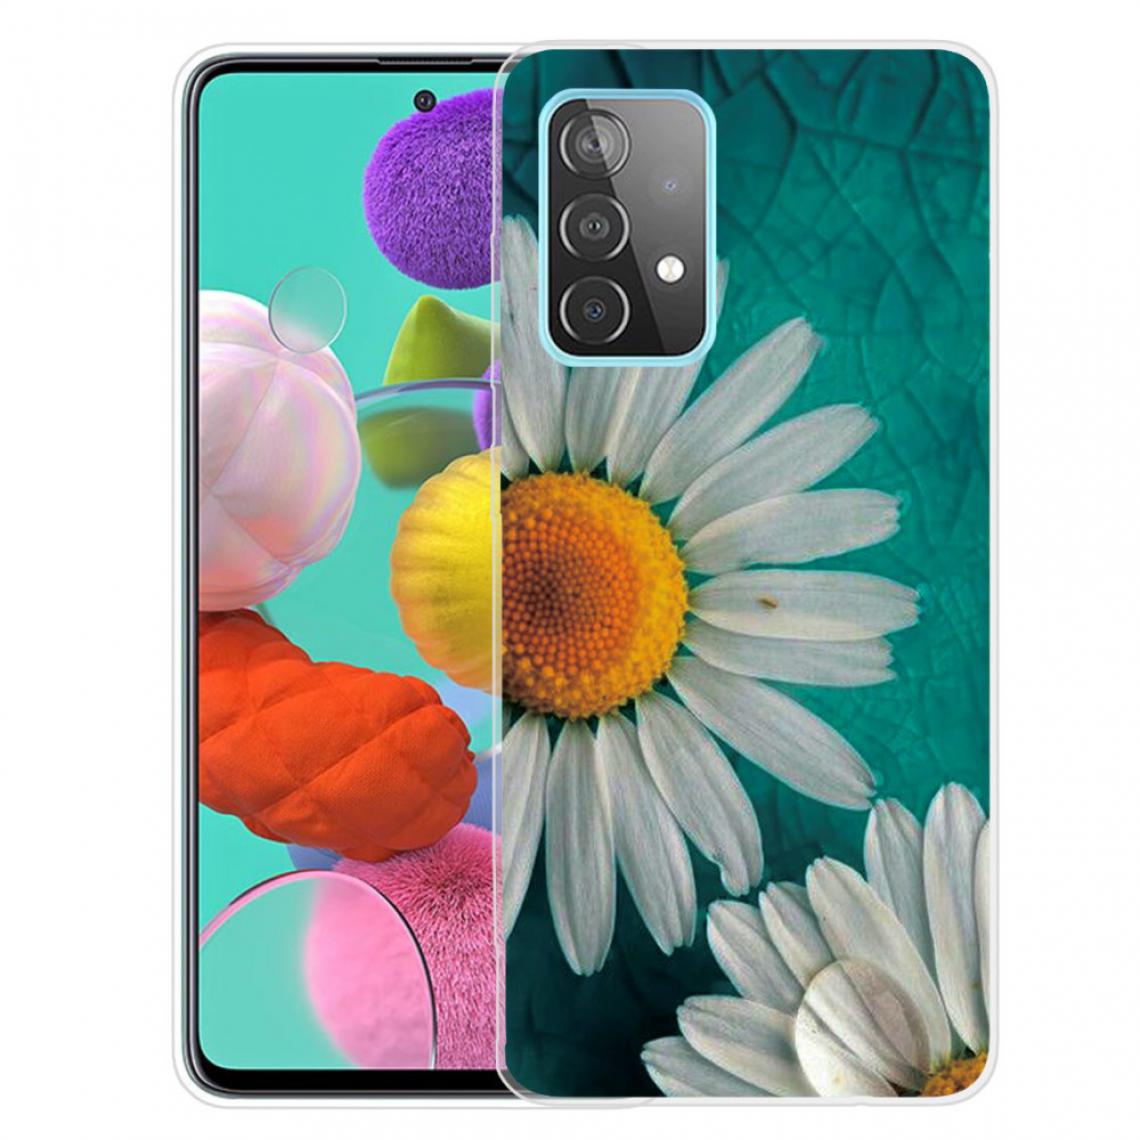 Other - Coque en TPU Bien protégé avec une impression de motifs élégante souple chrysanthème pour votre Samsung Galaxy A82 5G - Coque, étui smartphone